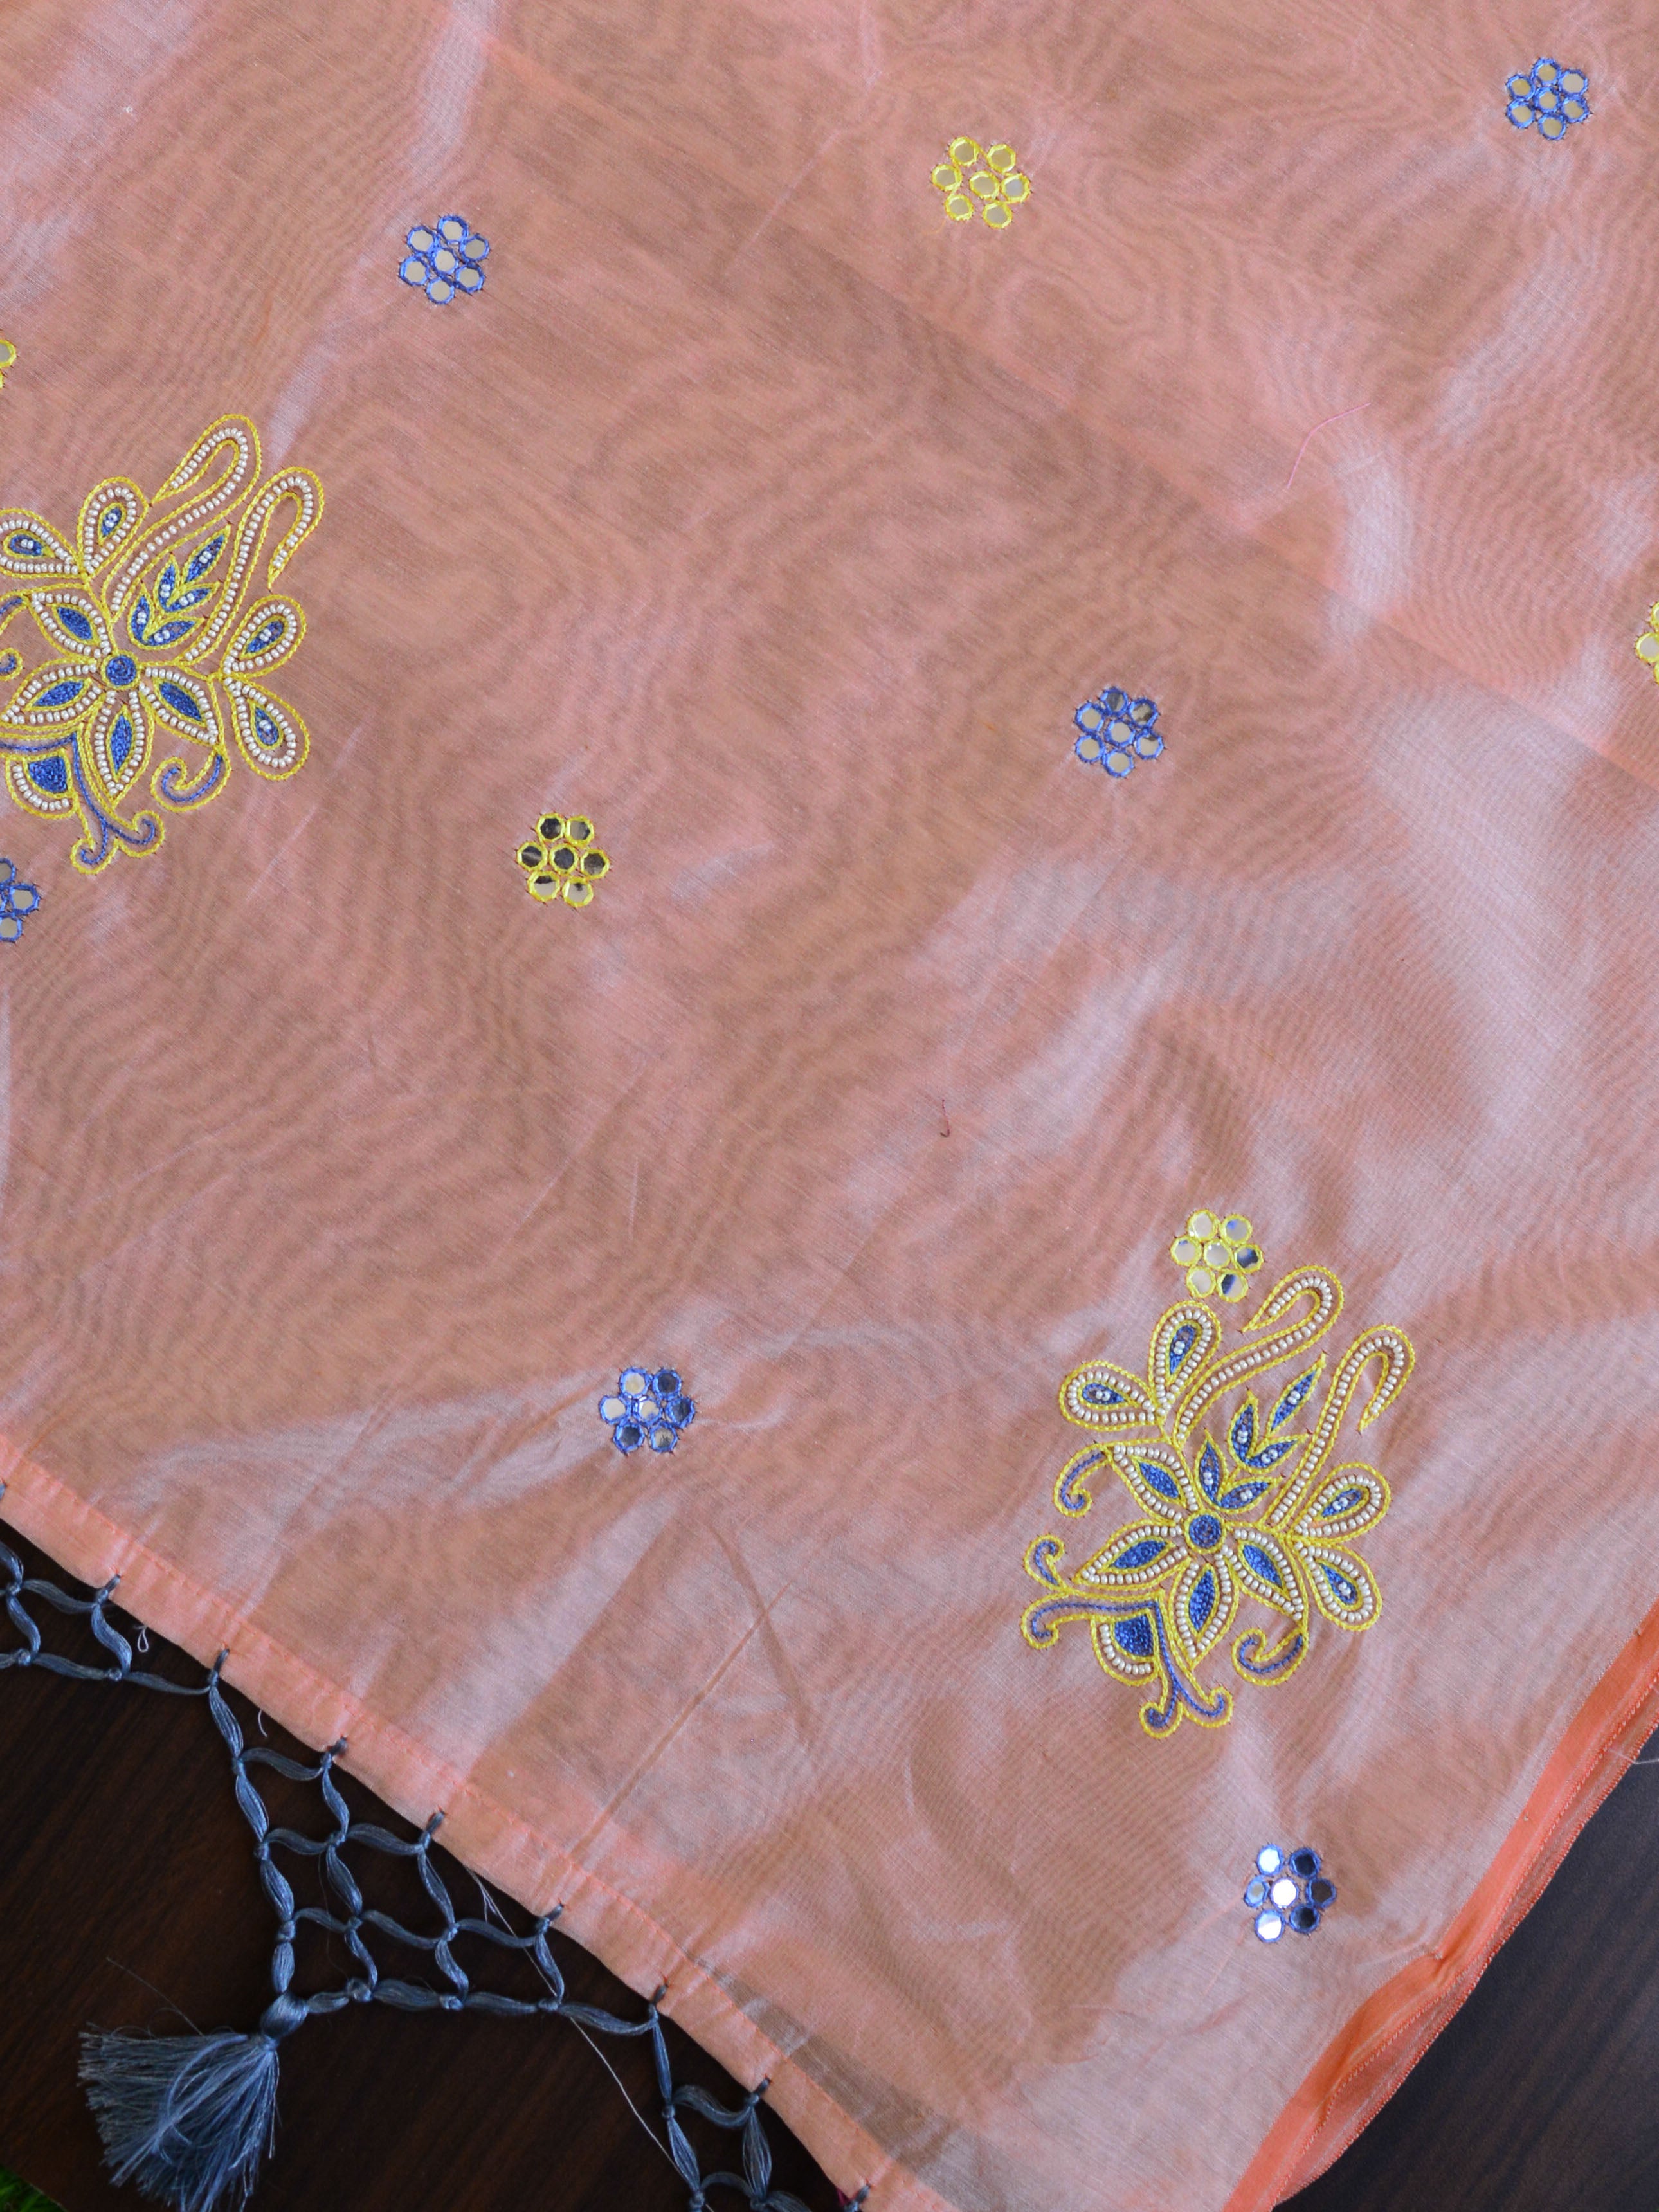 Banarasee Chanderi Cotton Hand-Embroidered Saree-Peach